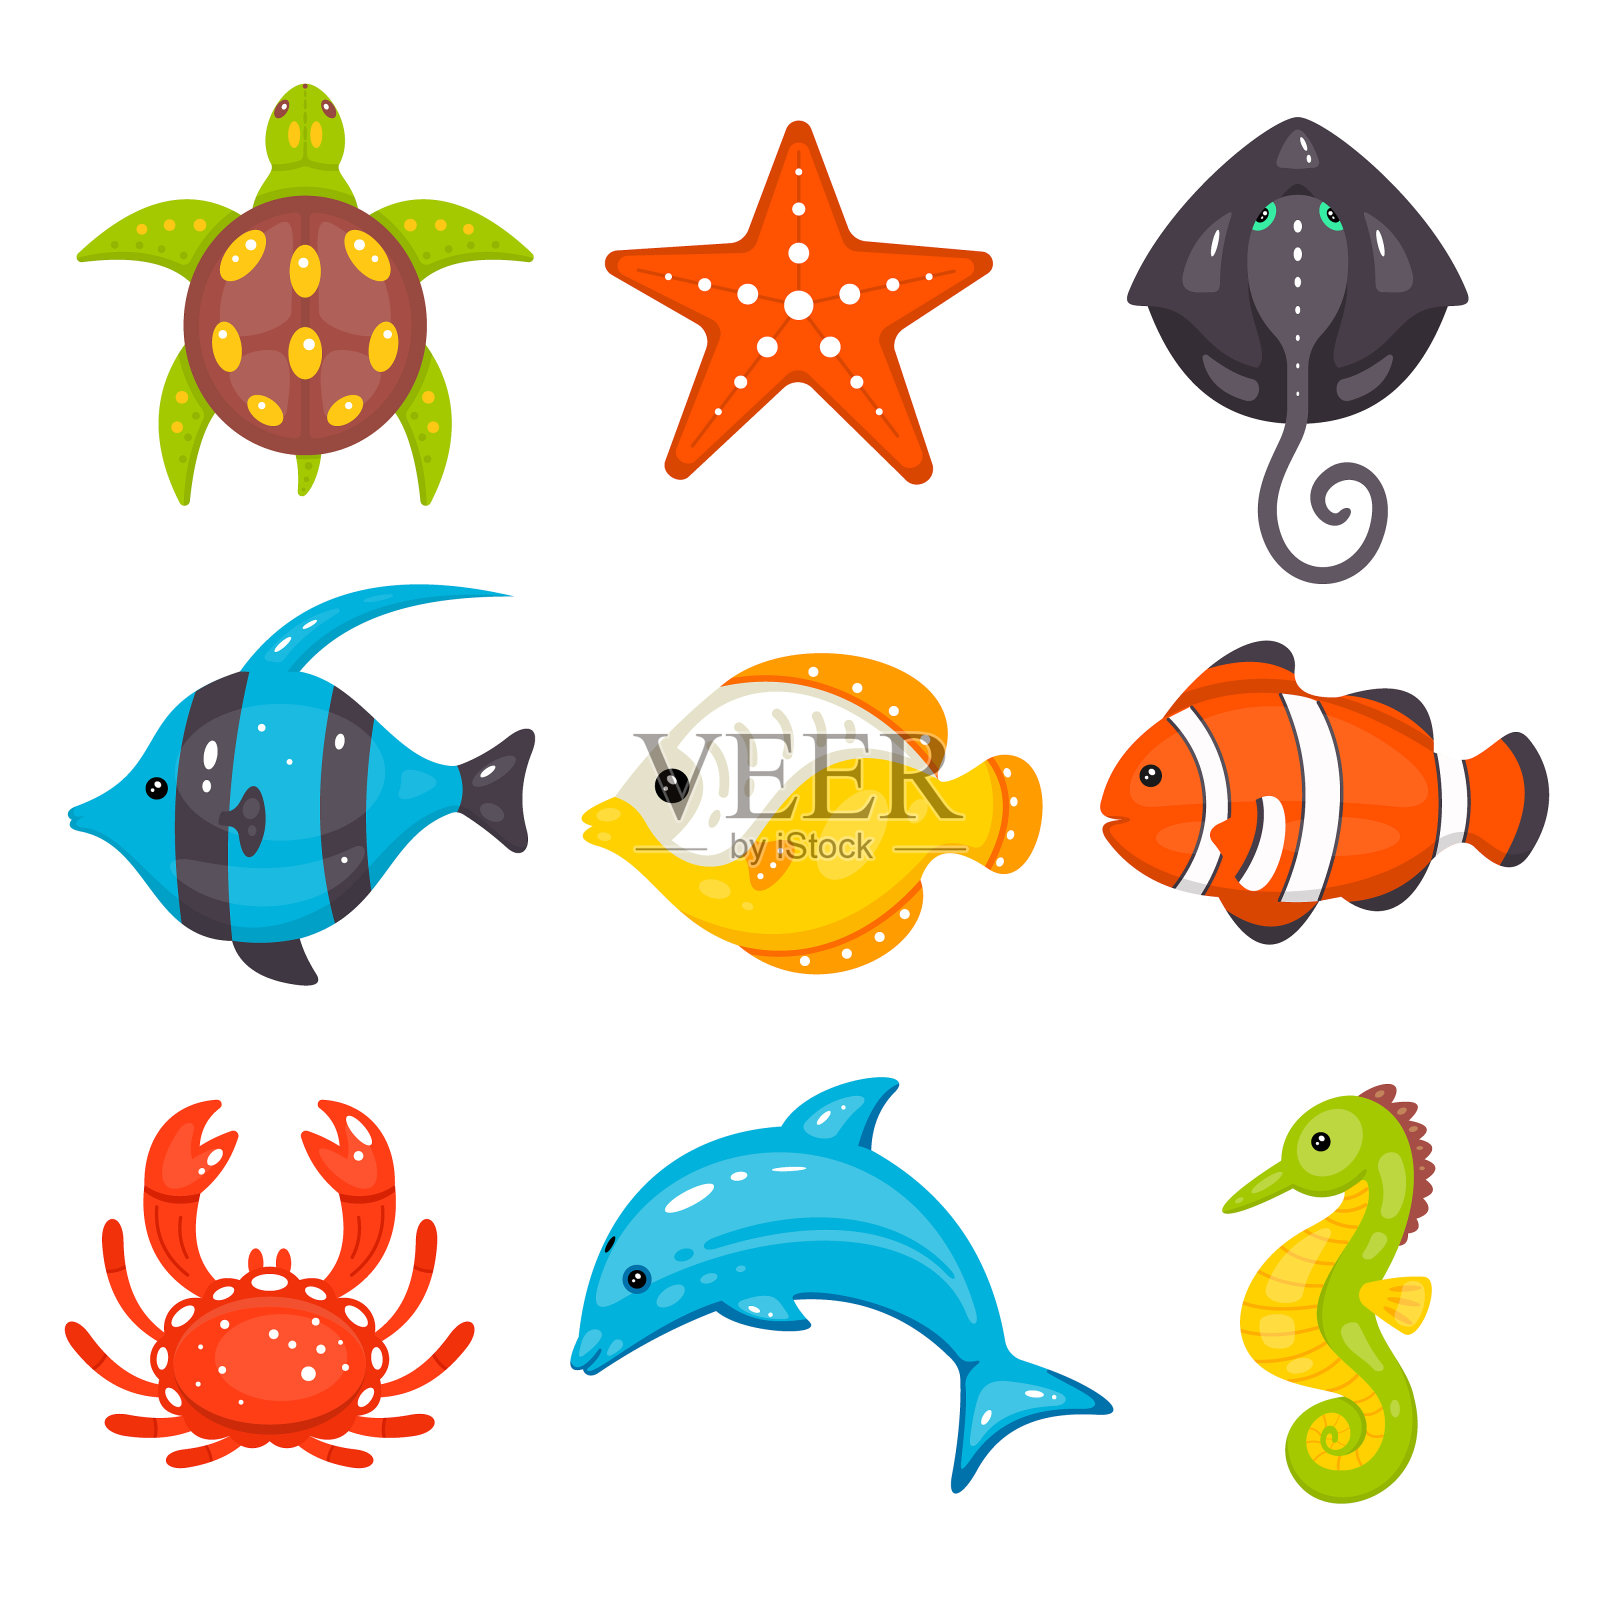 海洋动物矢量设置在卡通手绘风格。海洋生物和水下生物包括海龟、海星、黄貂鱼、鱼类、螃蟹、海豚、海马。插画图片素材